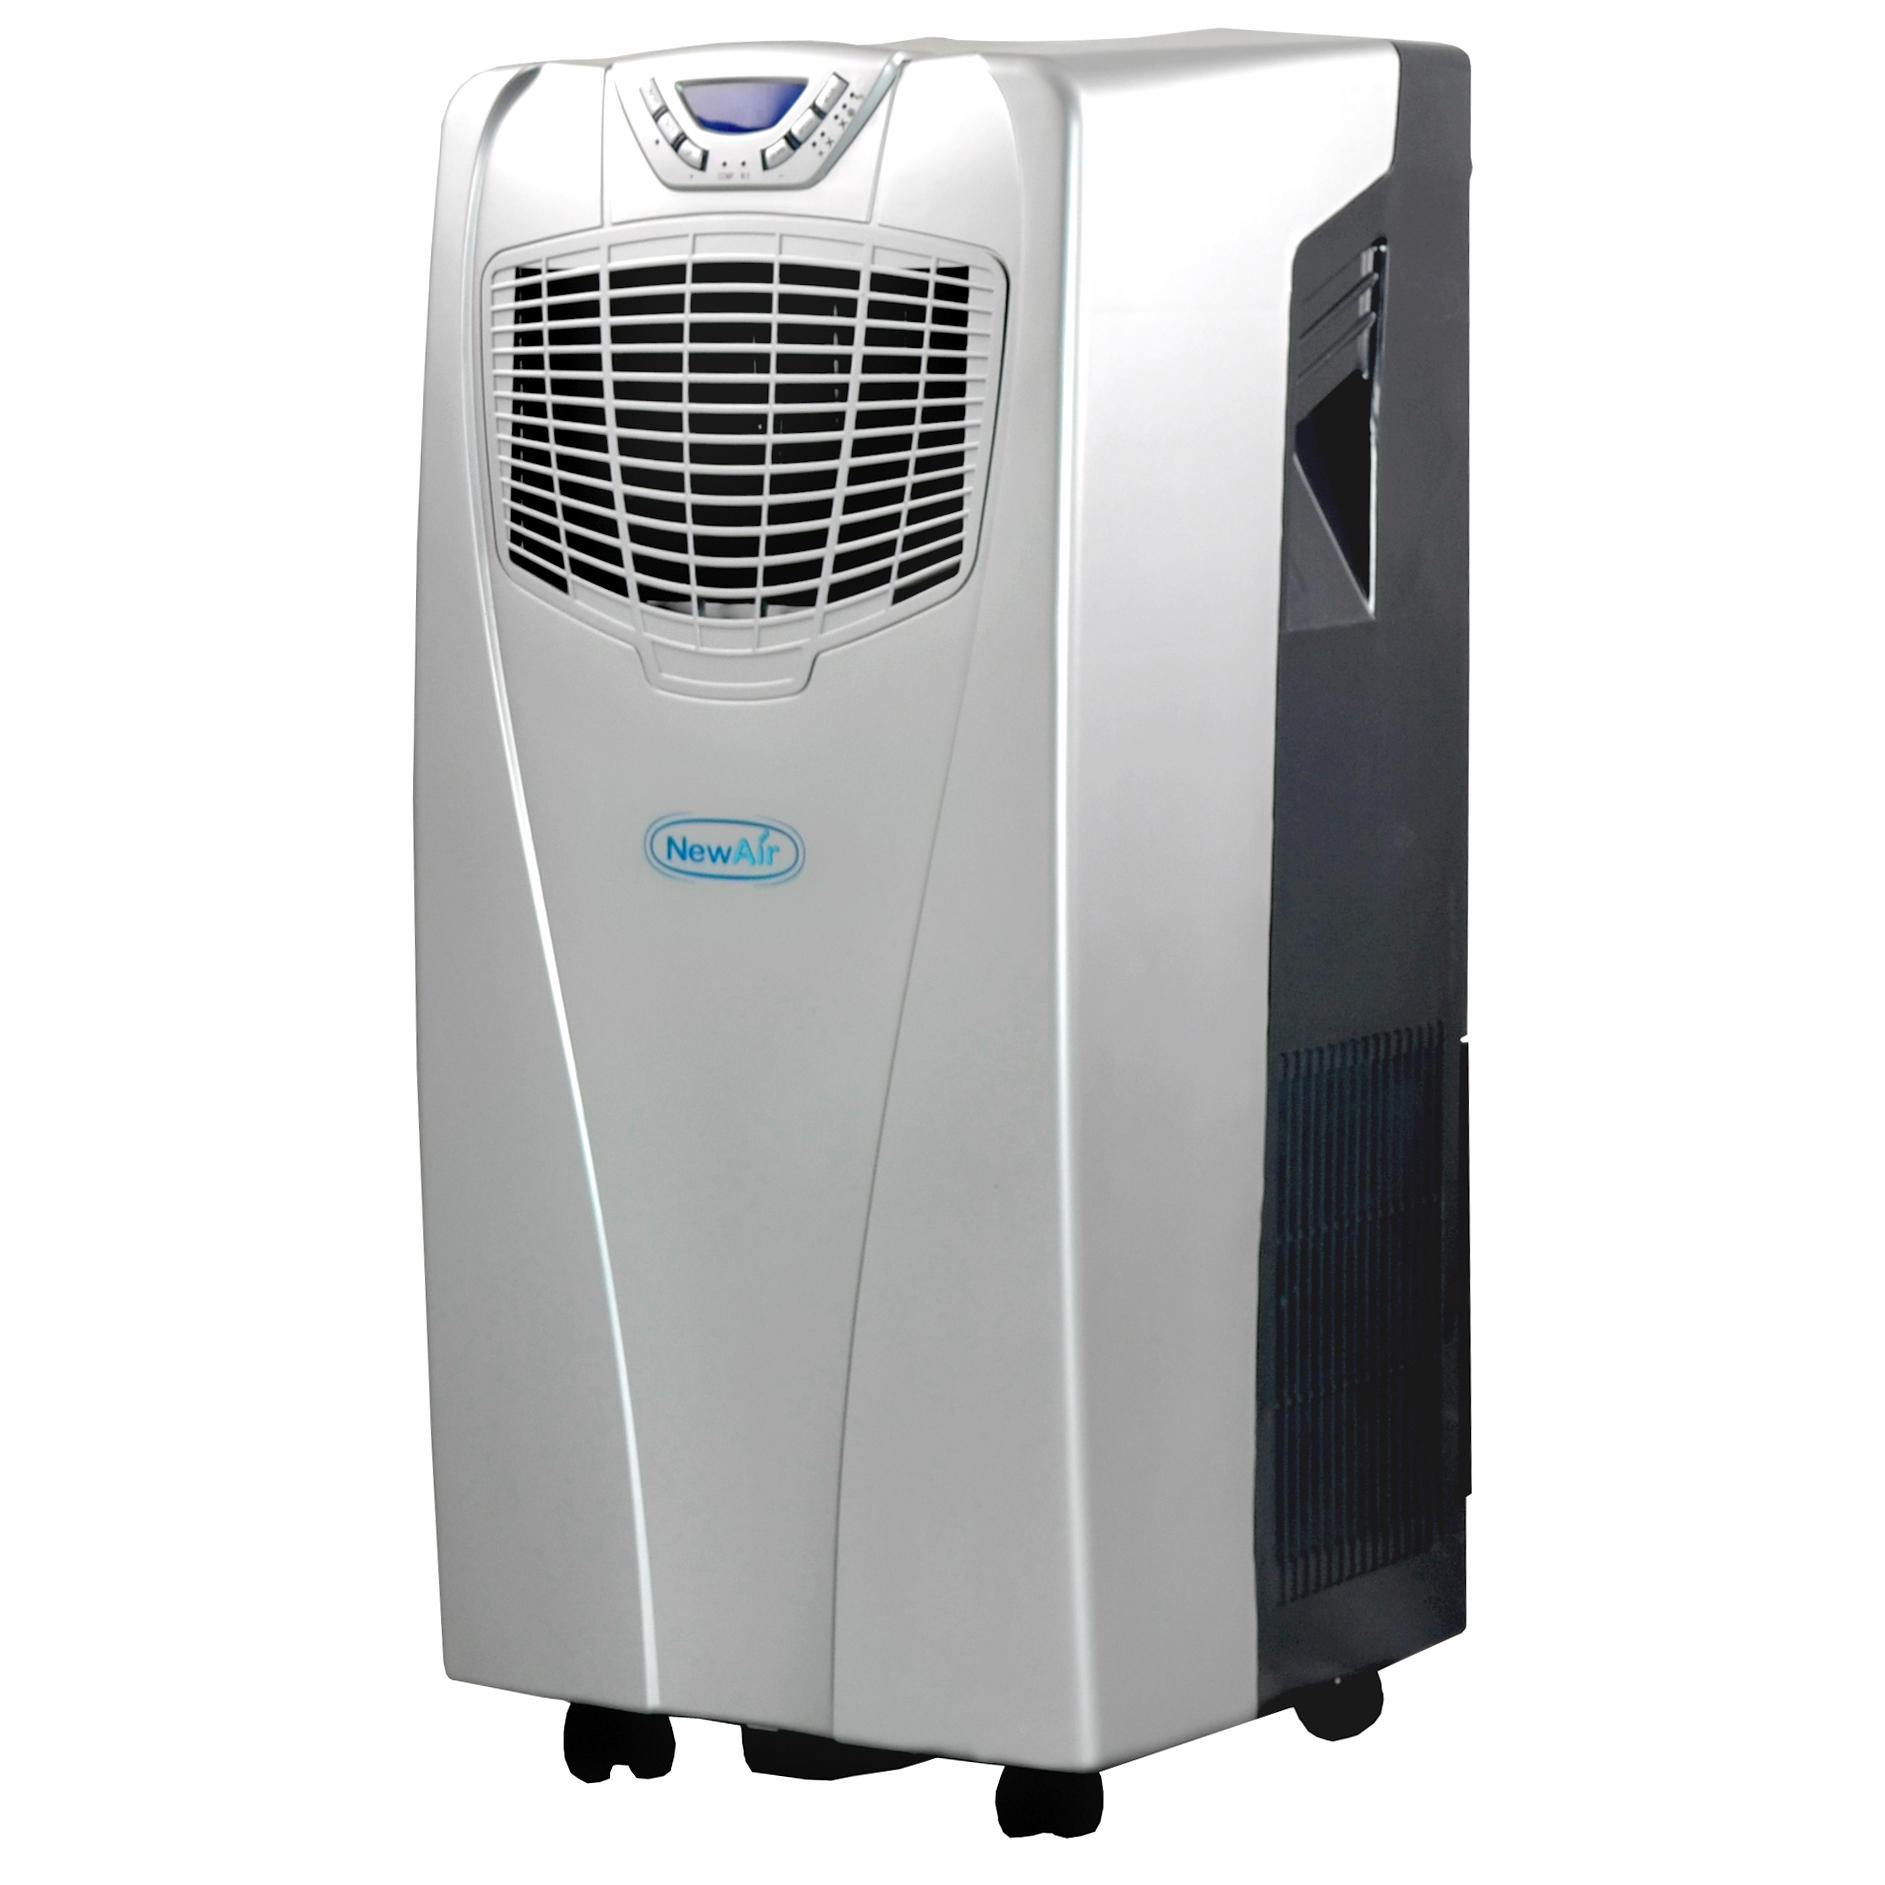 NewAir 10000 BTU Portable Air Conditioner   Appliances   Air